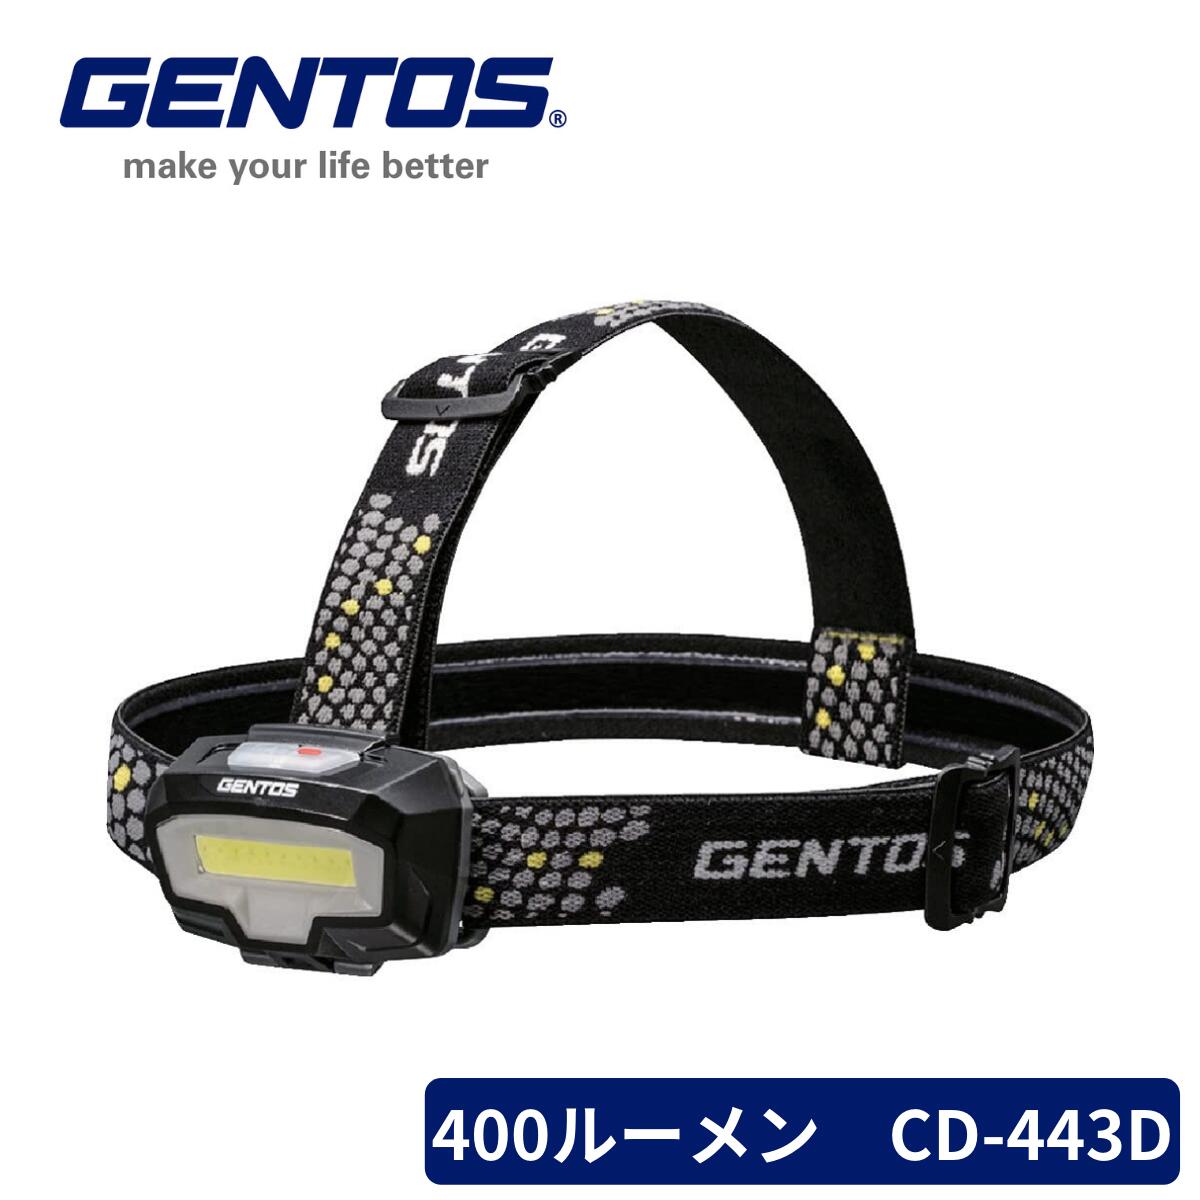 GENTOS LED ヘッドライト CB-443D コンブレーカー 単4電池式 400ルーメン 2色(白/赤) 父の日 早割